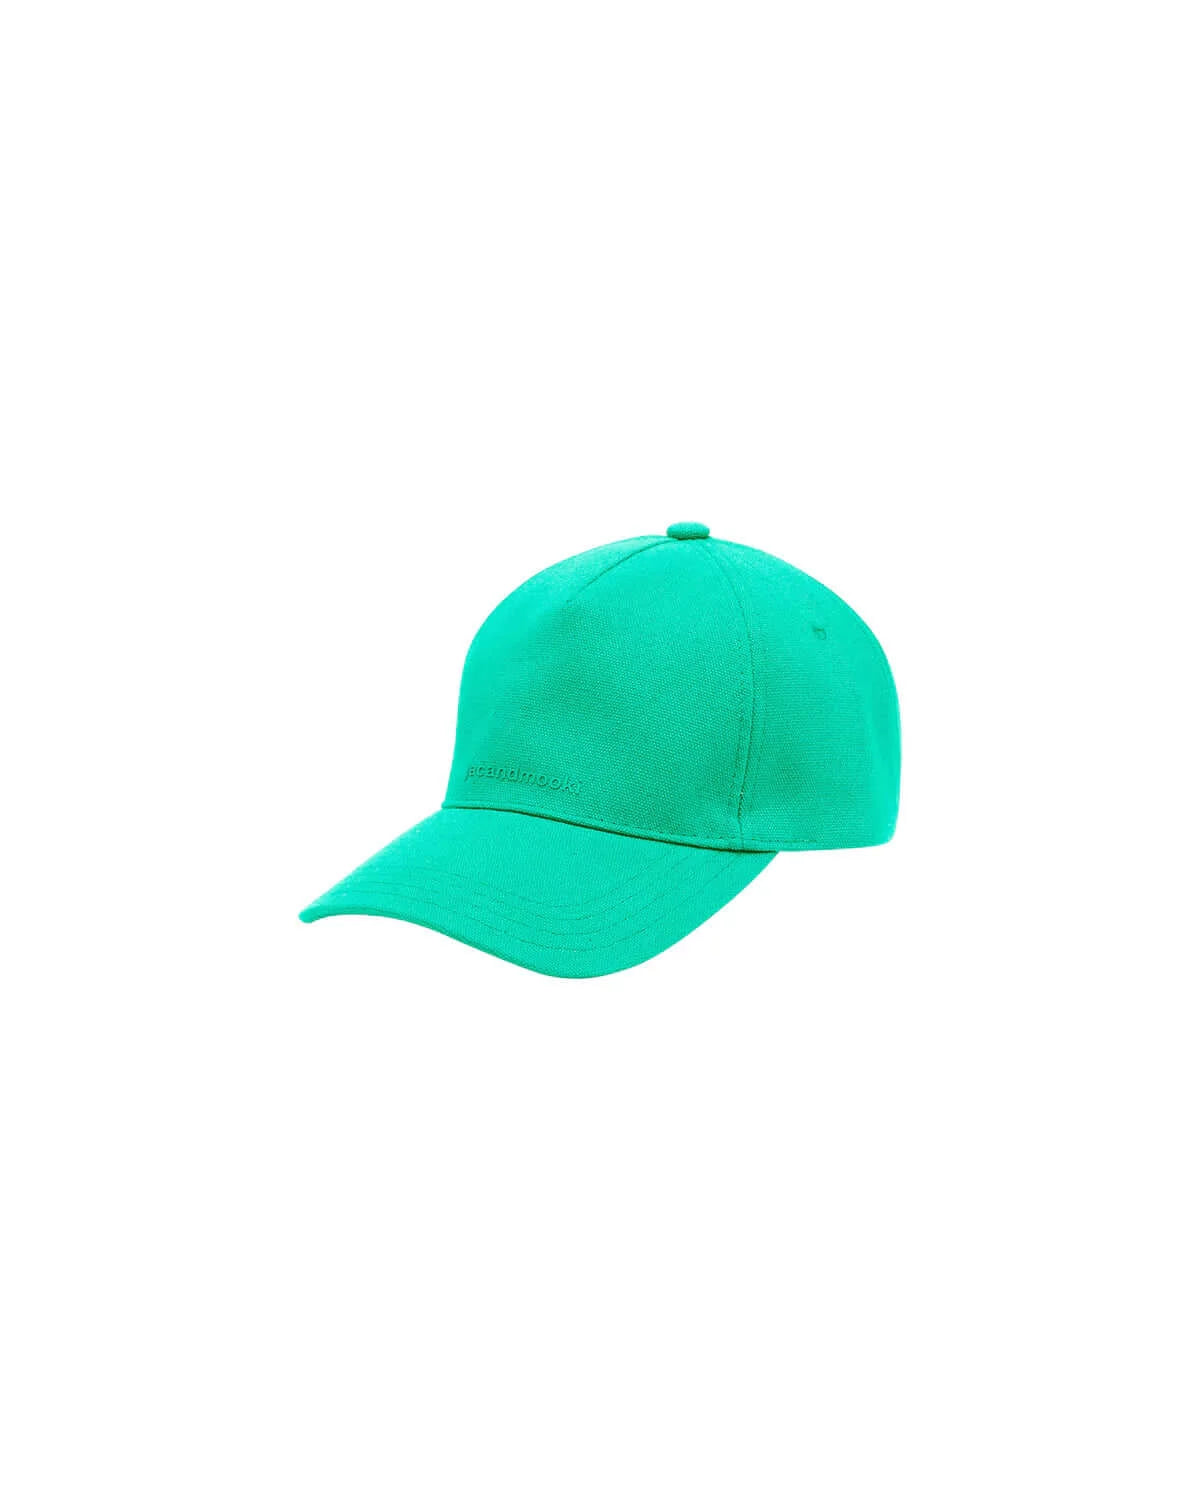 Jac & Mooki - Aqua Green Cap